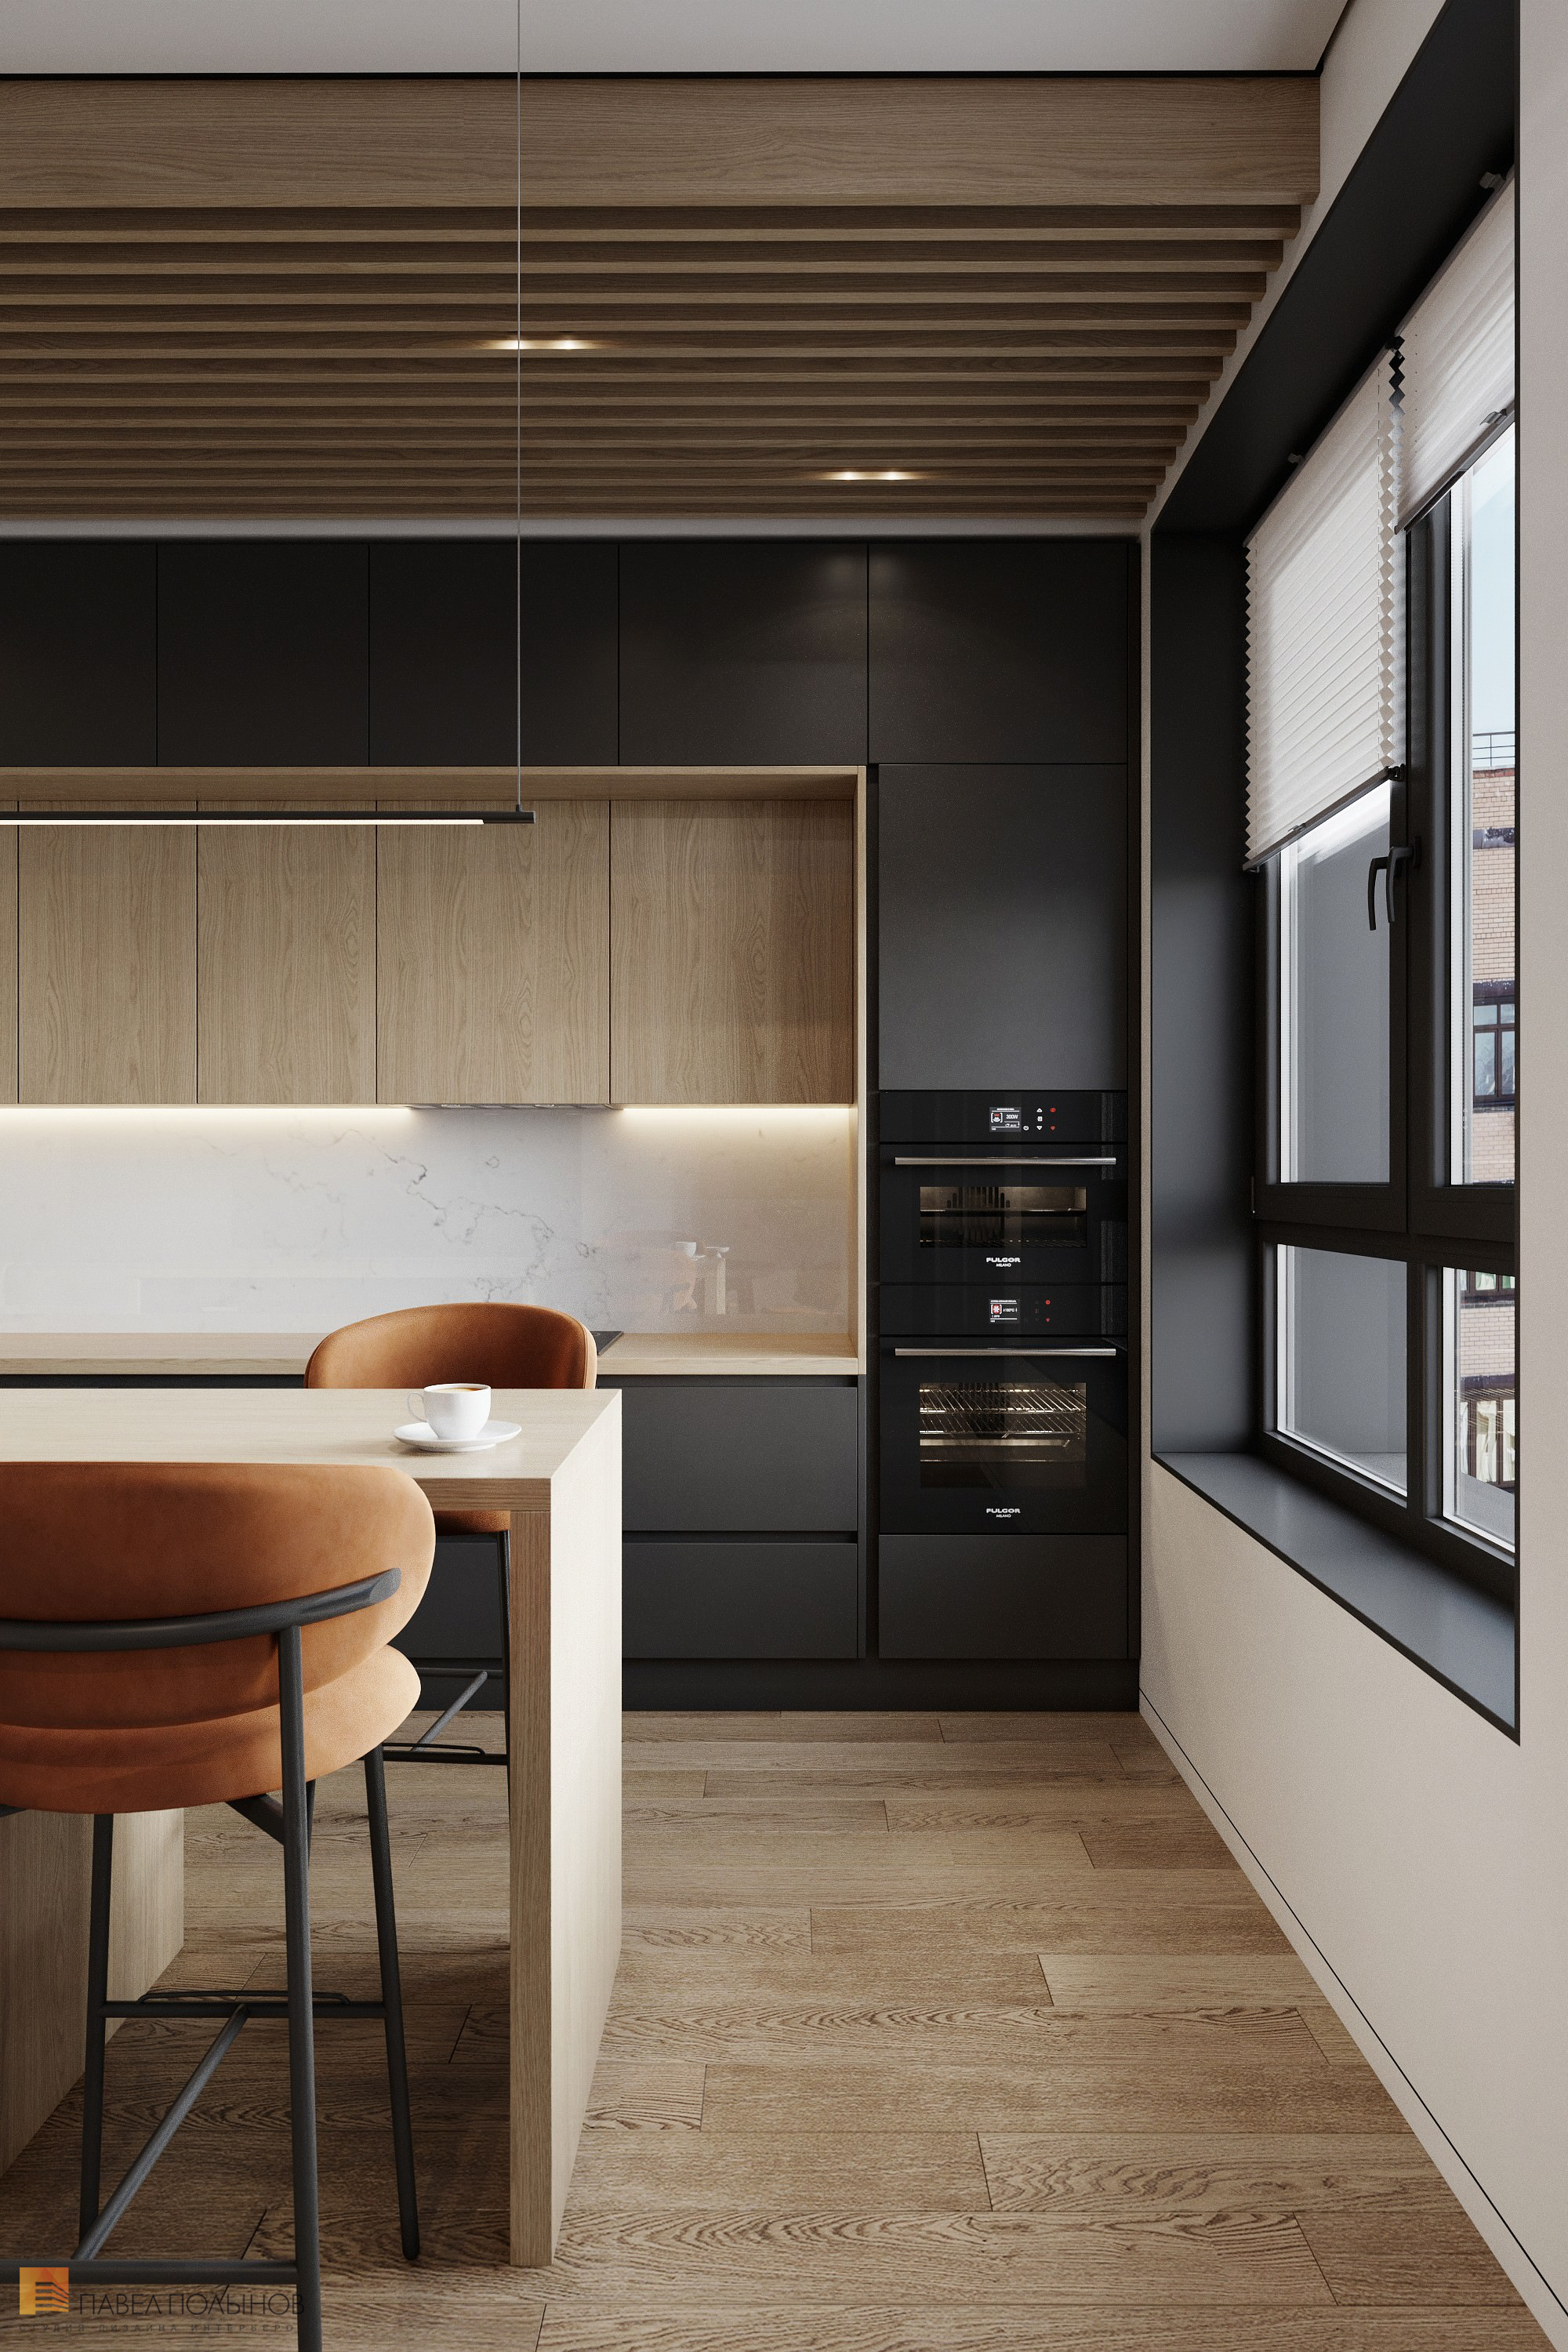 Фото дизайн кухни из проекта «Дизайн интерьера квартиры в современном стиле, ЖК «Сердце столицы», 98 кв.м.»